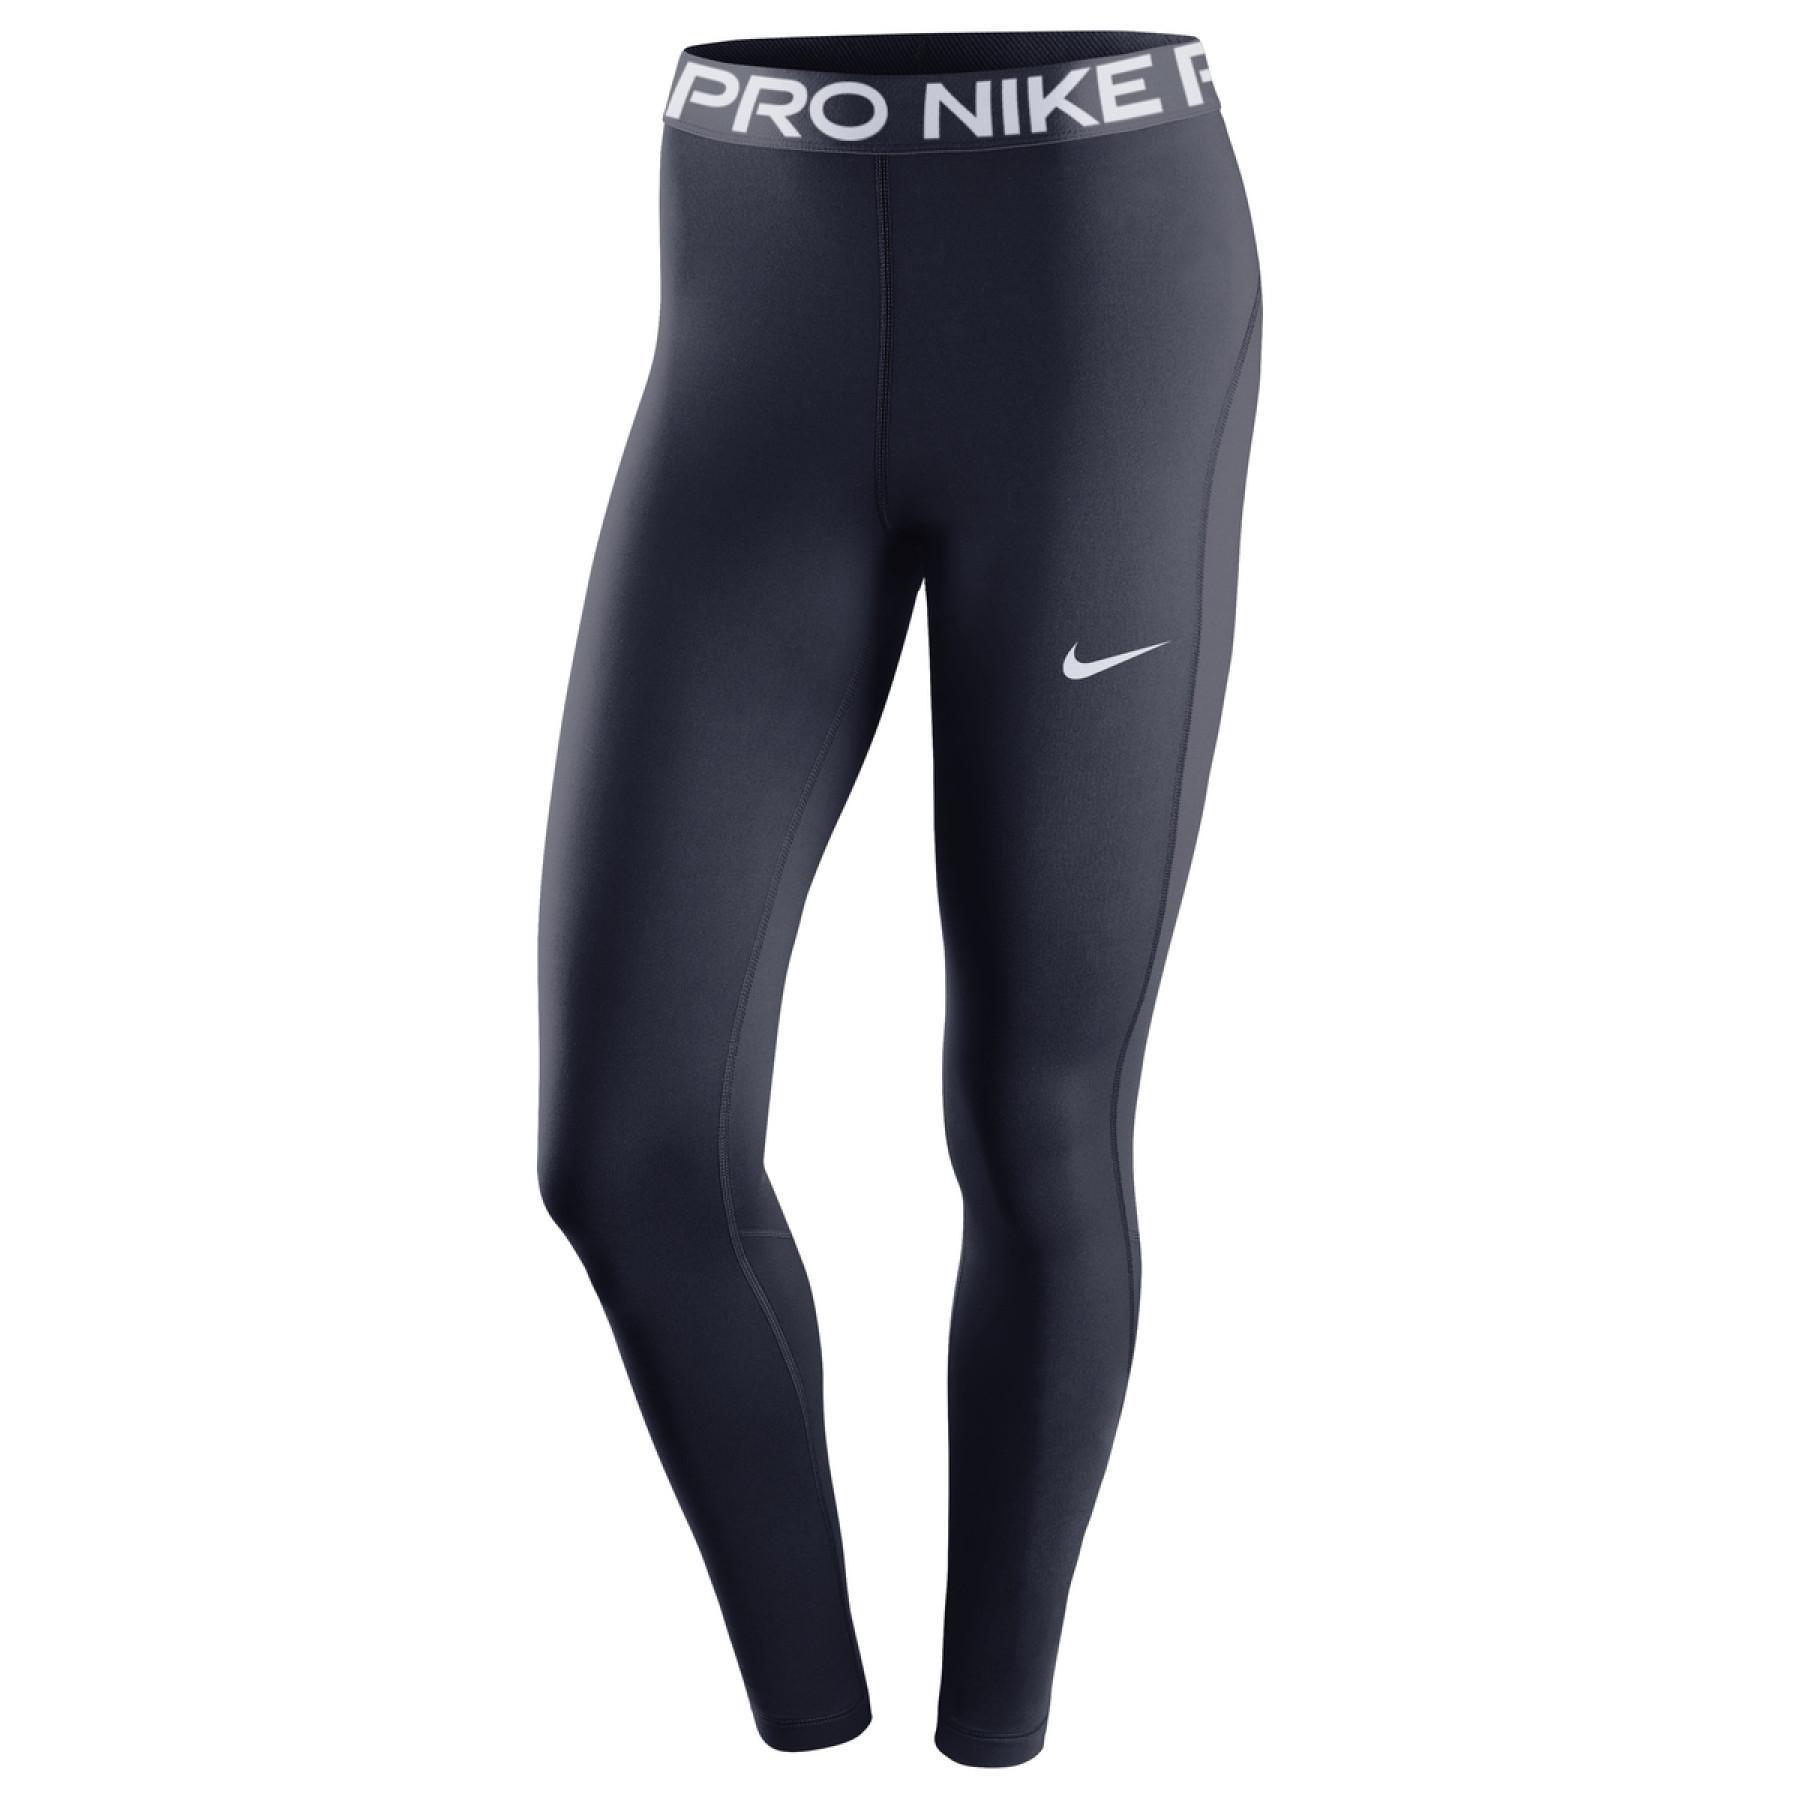 Women's Legging Nike Pro 365 - Pants - Women's volleyball wear